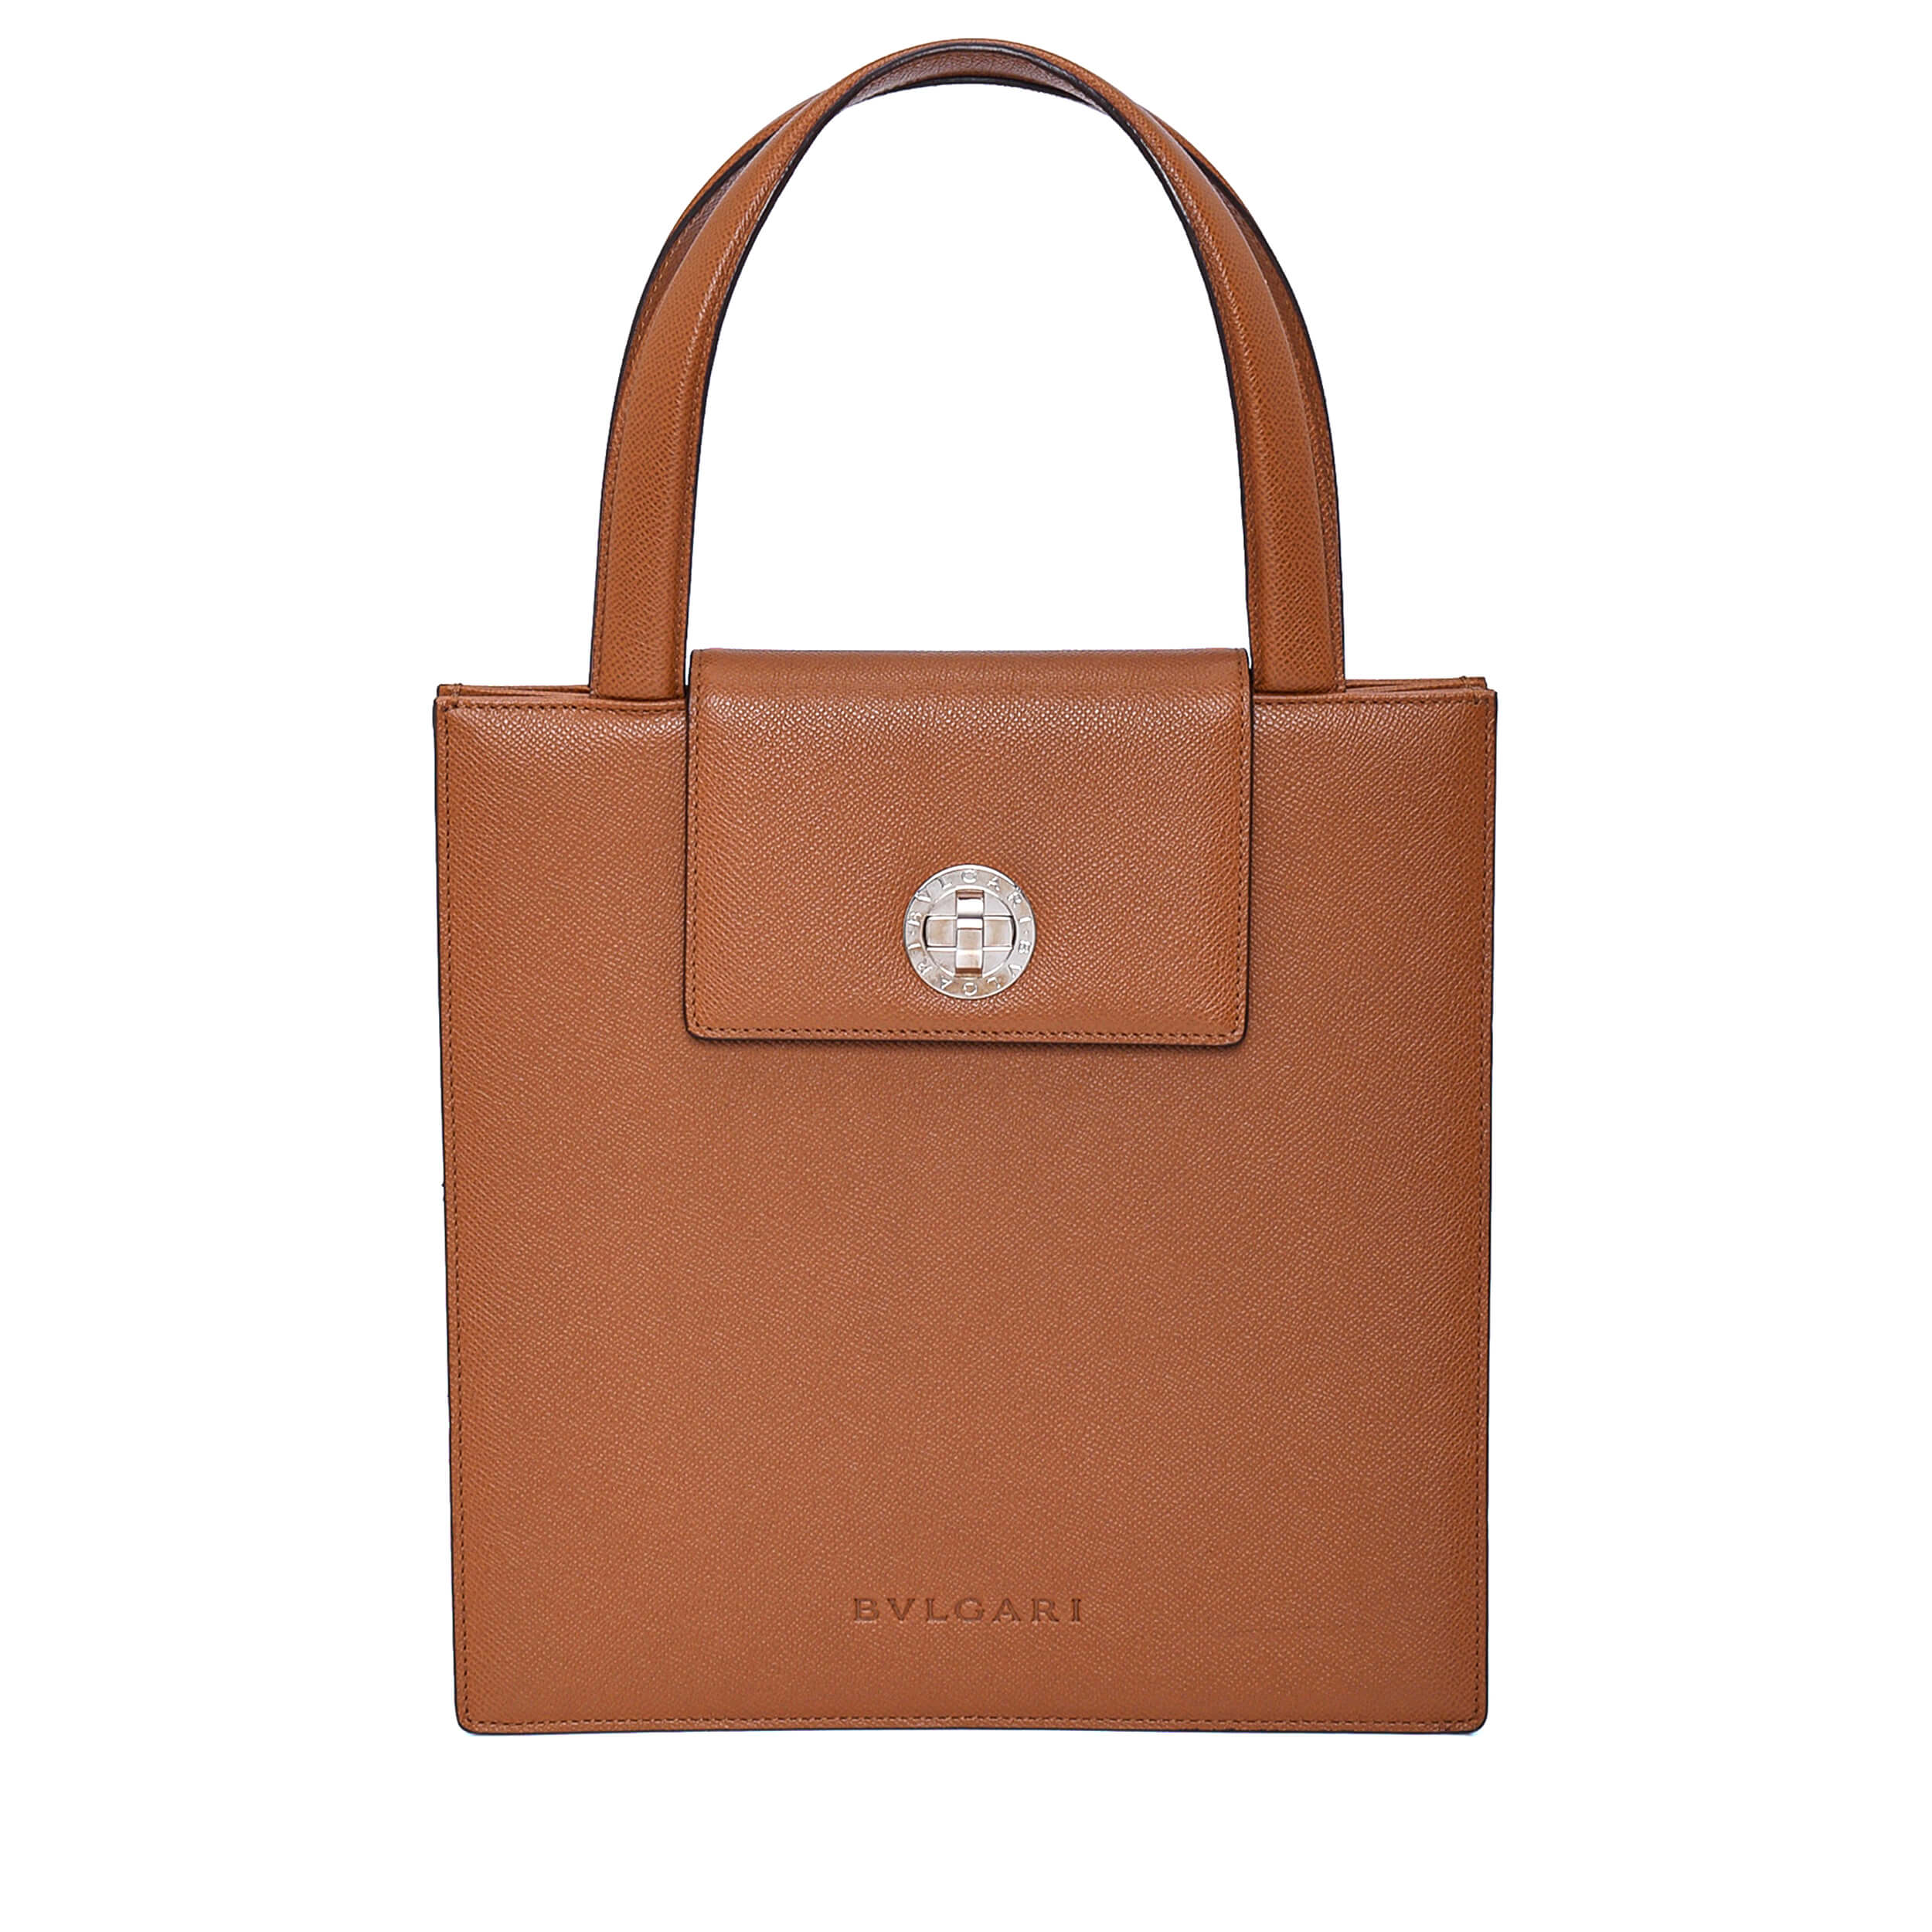 Bvlgari - Brown Leather Big Square Top Handle Bag 